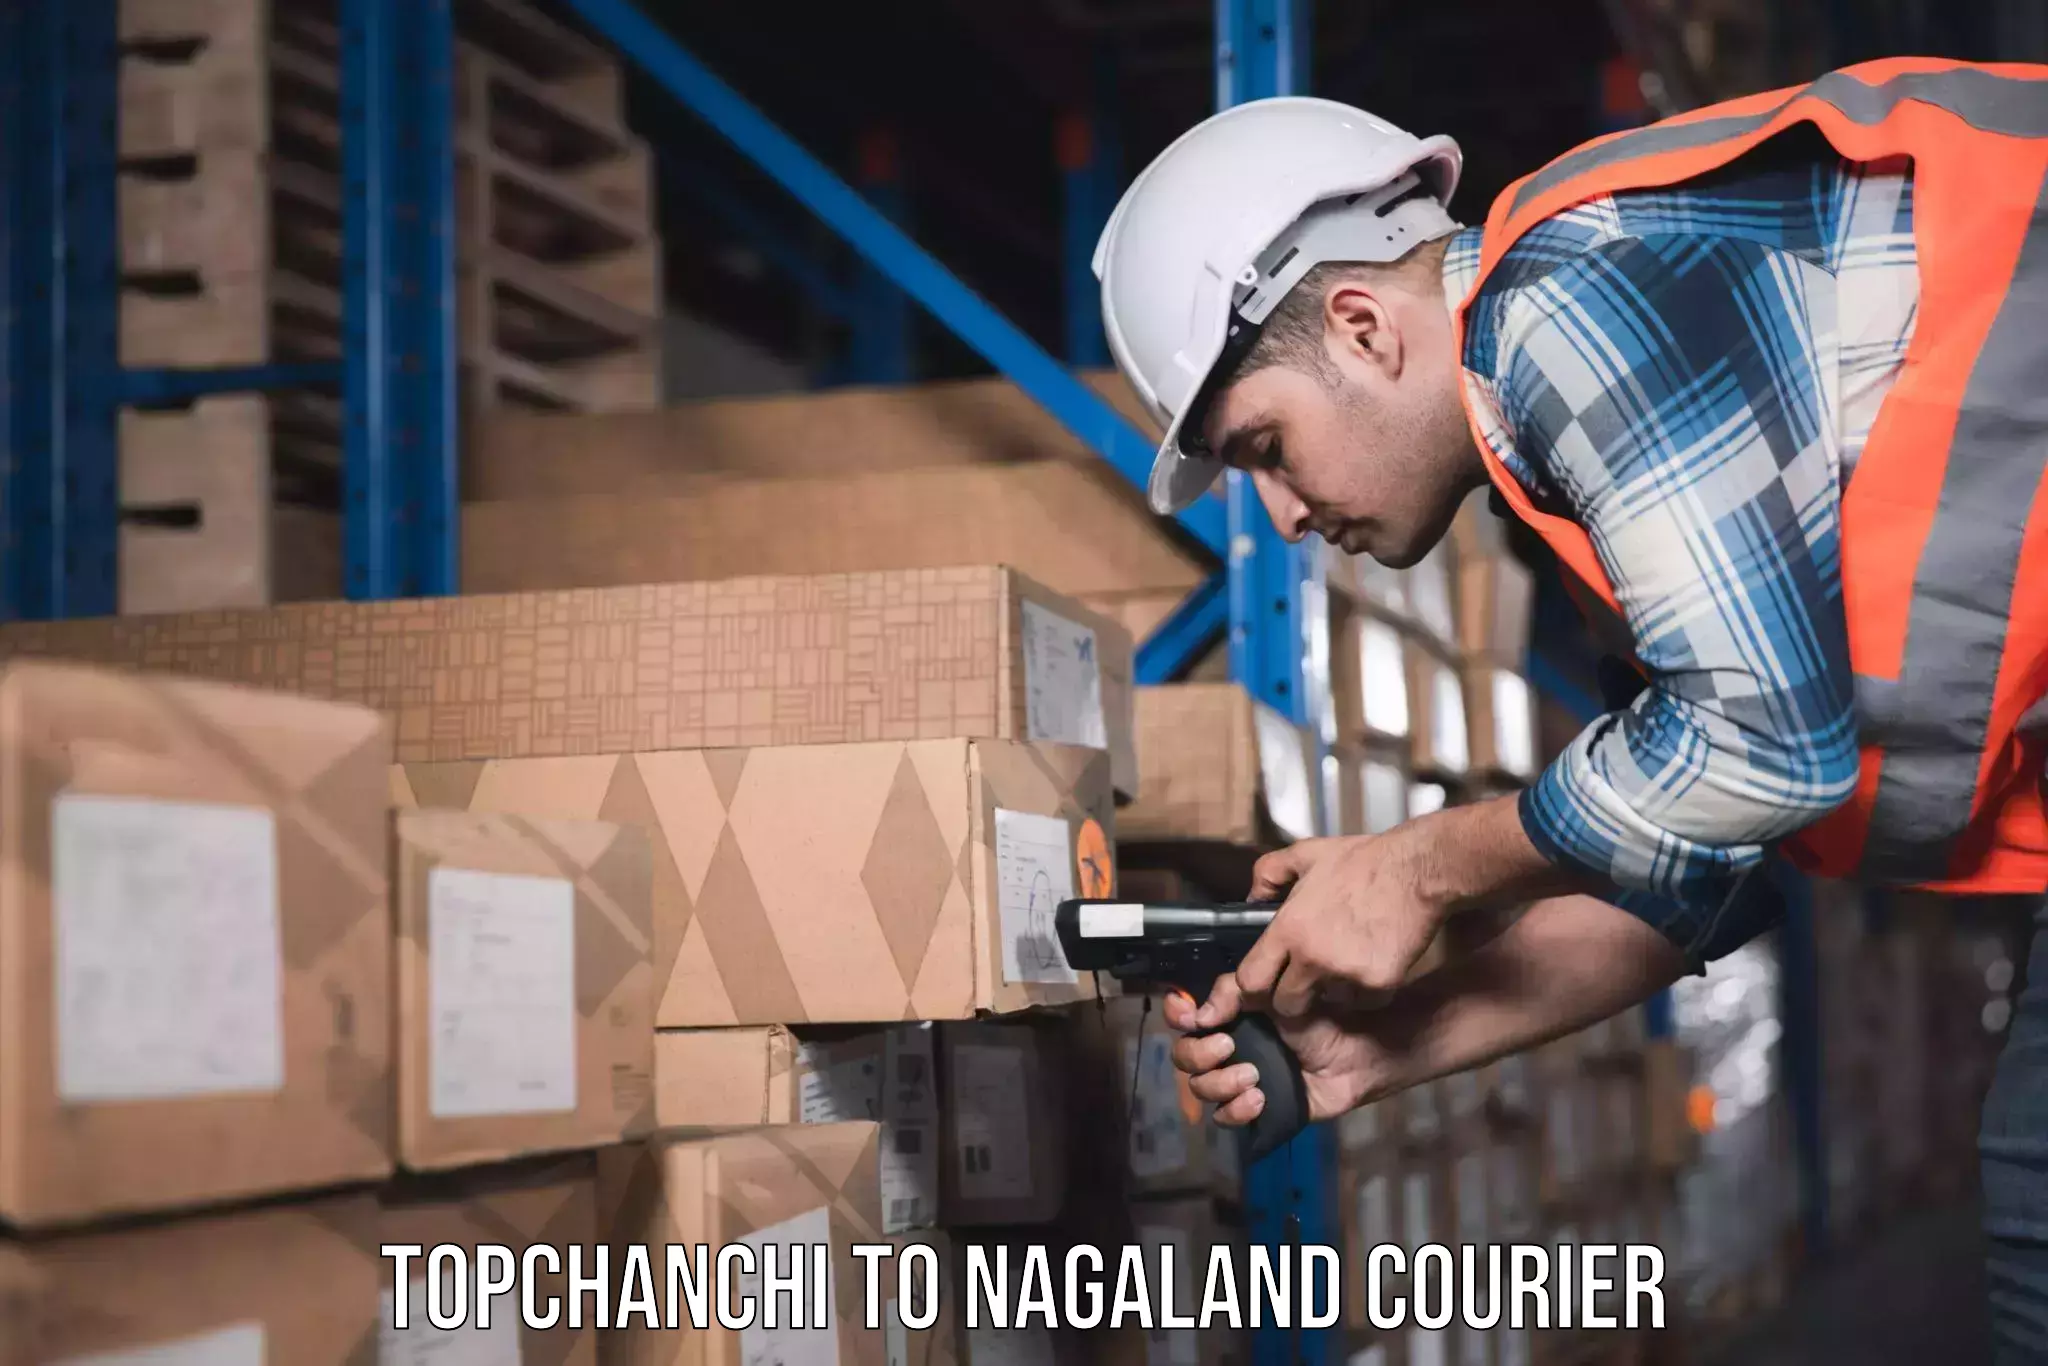 Professional moving company Topchanchi to Chumukedima